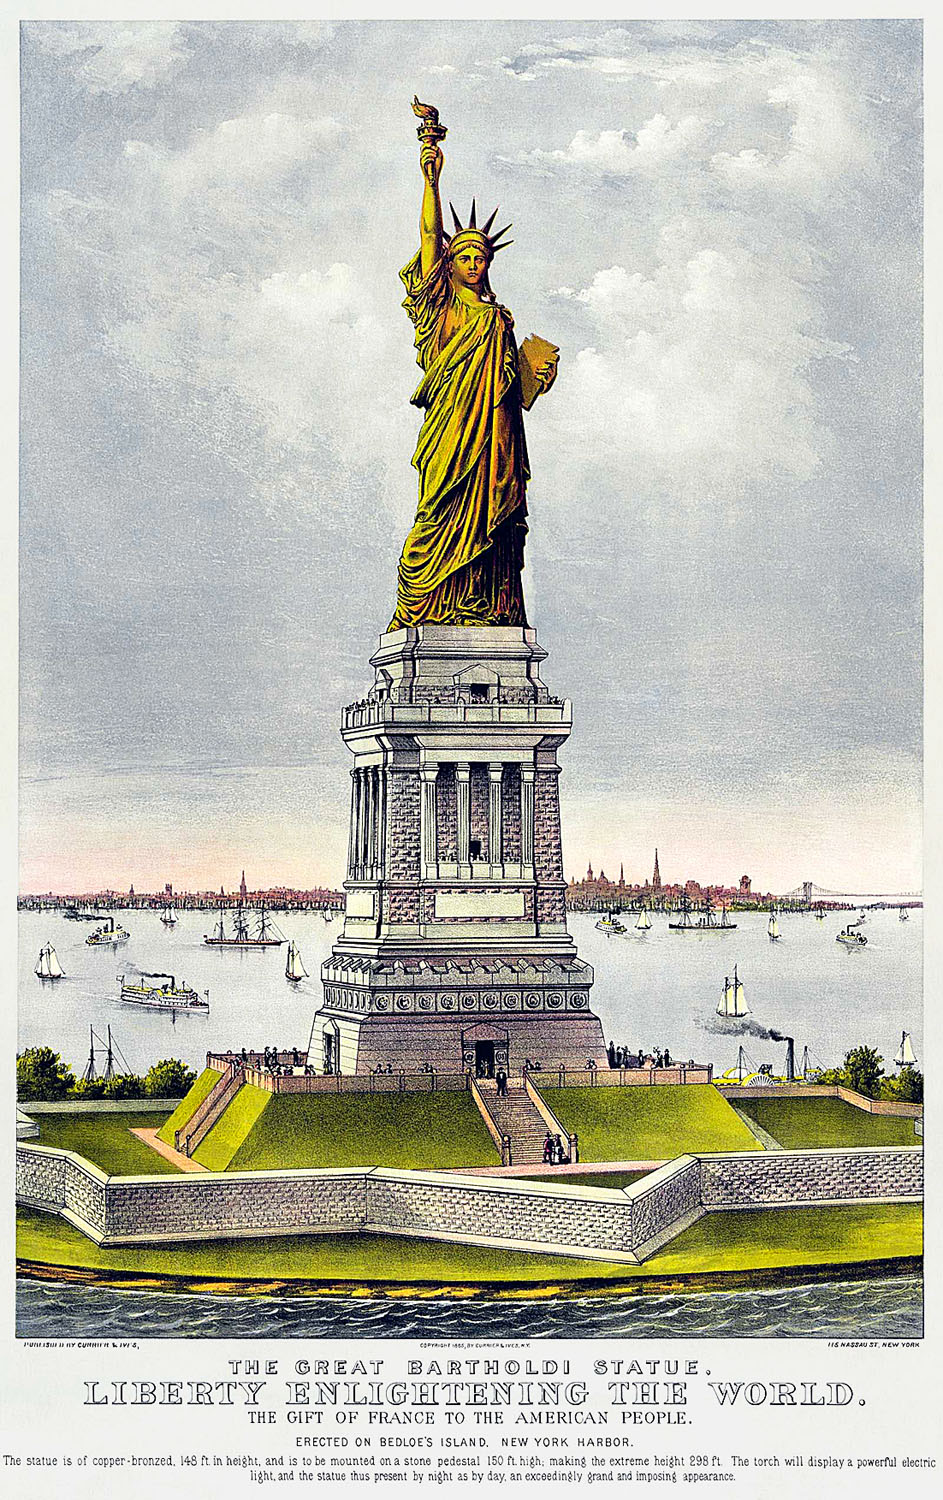 1866: a Szabadság Megvilágosítja a Világot, rövidebb nevén a Szabadság-szobor